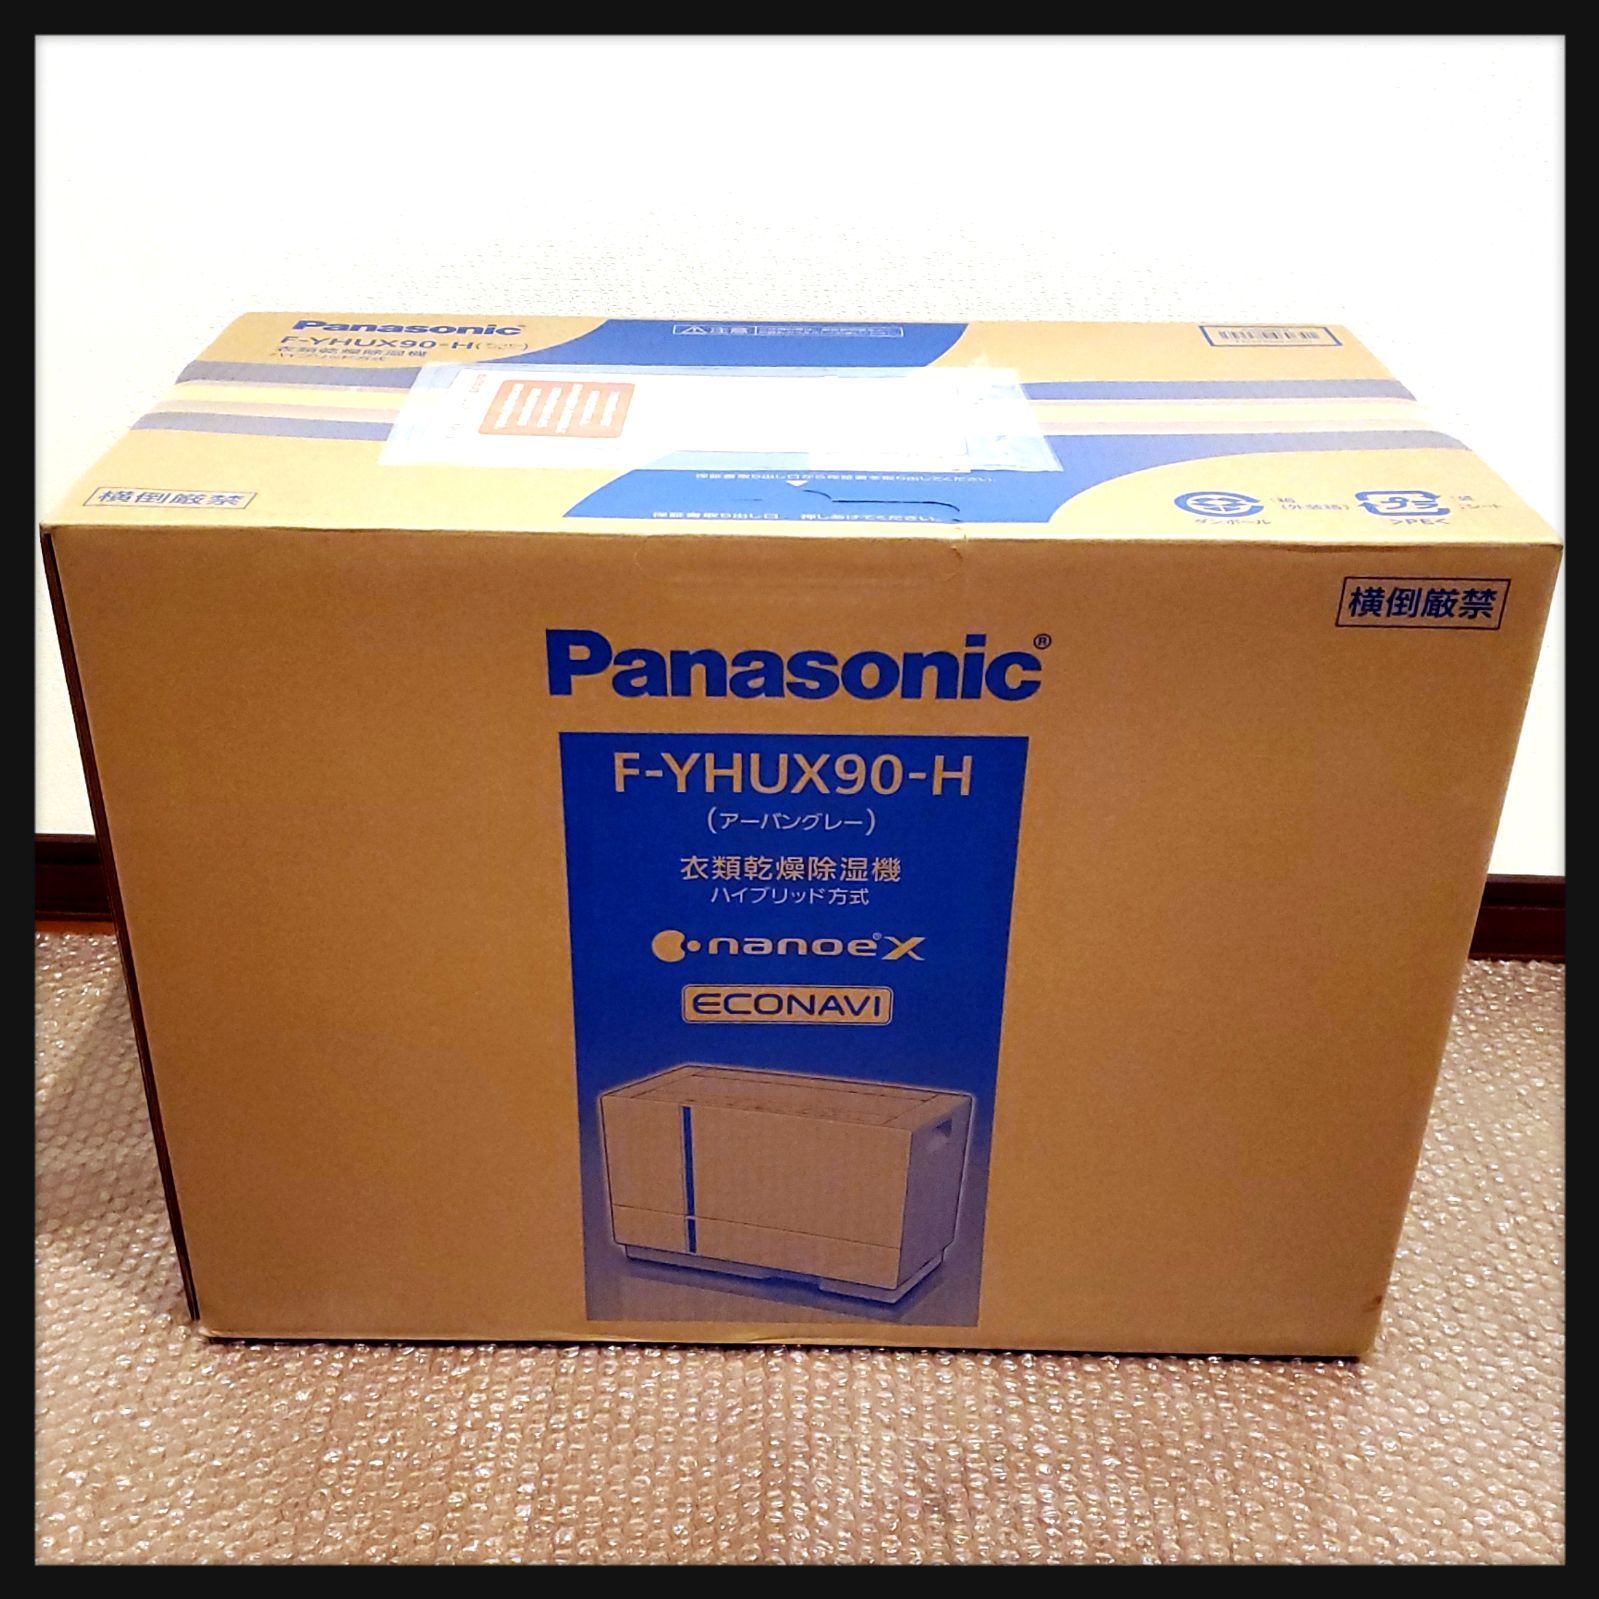 新品】Panasonic 衣類乾燥除湿機 F-YHUX90-H パナソニック - Milve